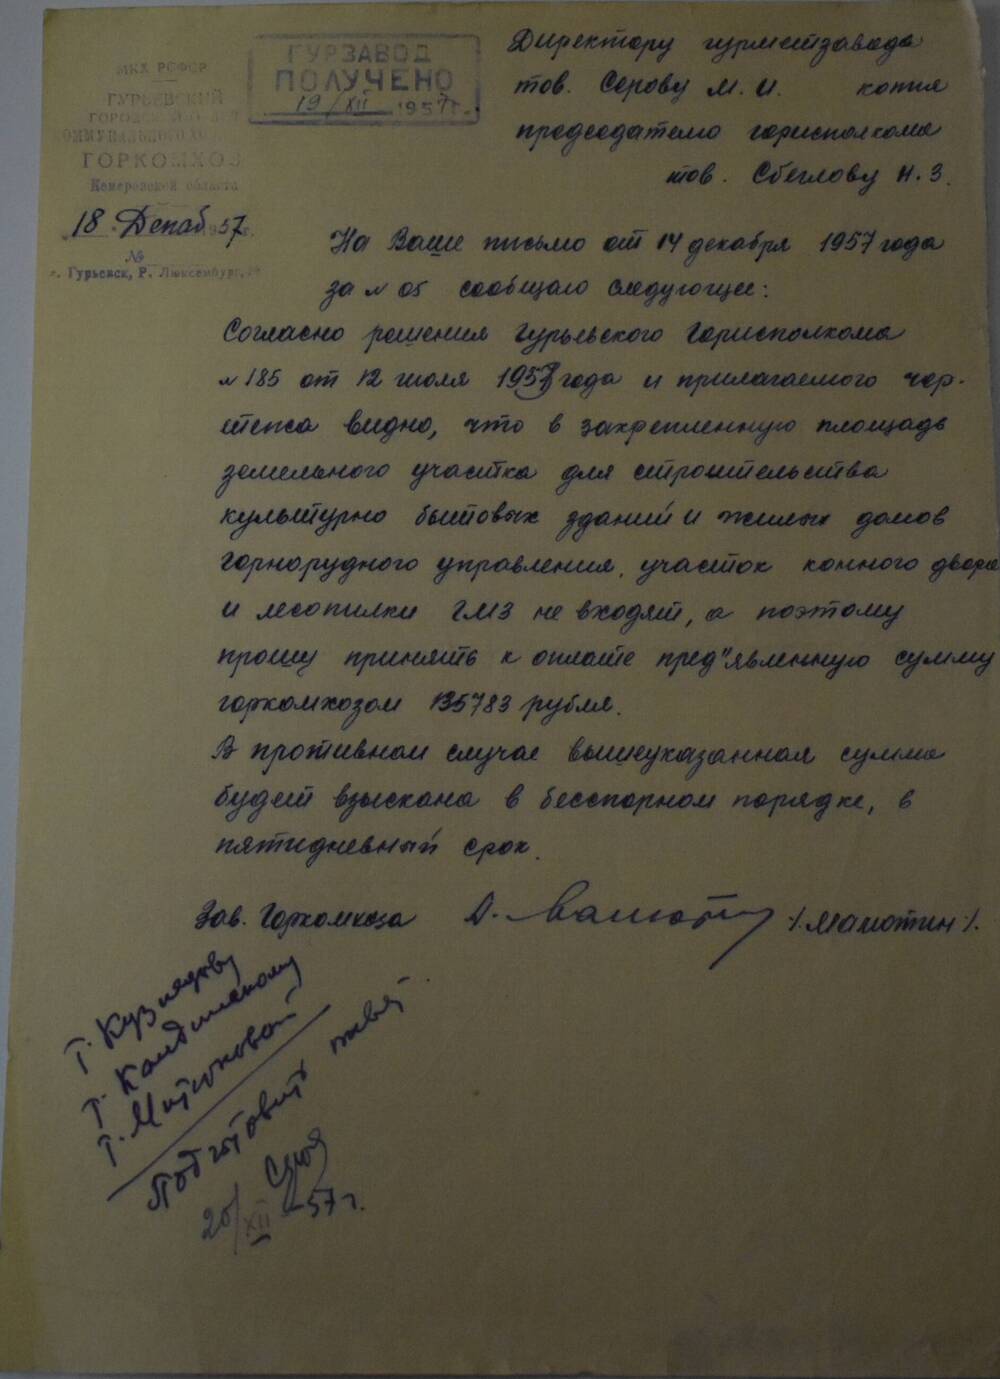 Письмо директору ГМЗ Серову М.И. о взыскании денежных средств за земельный участок